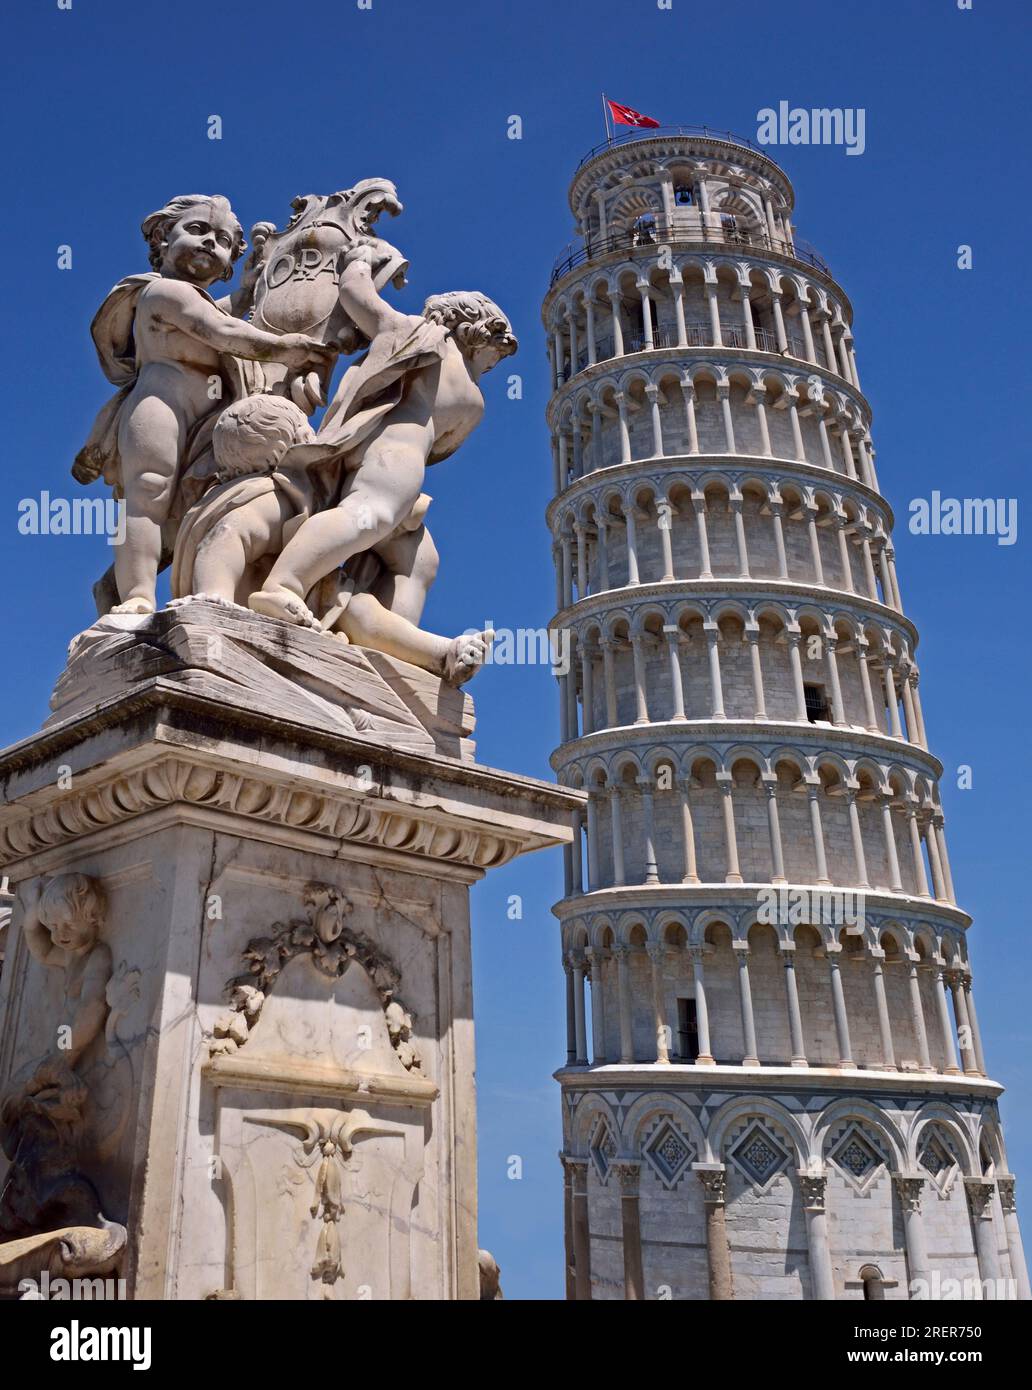 Pisa, Italia - 21 maggio 2016: La famosa Torre Pendente di Pisa con una statua vicina su sfondo blu chiaro. Foto Stock